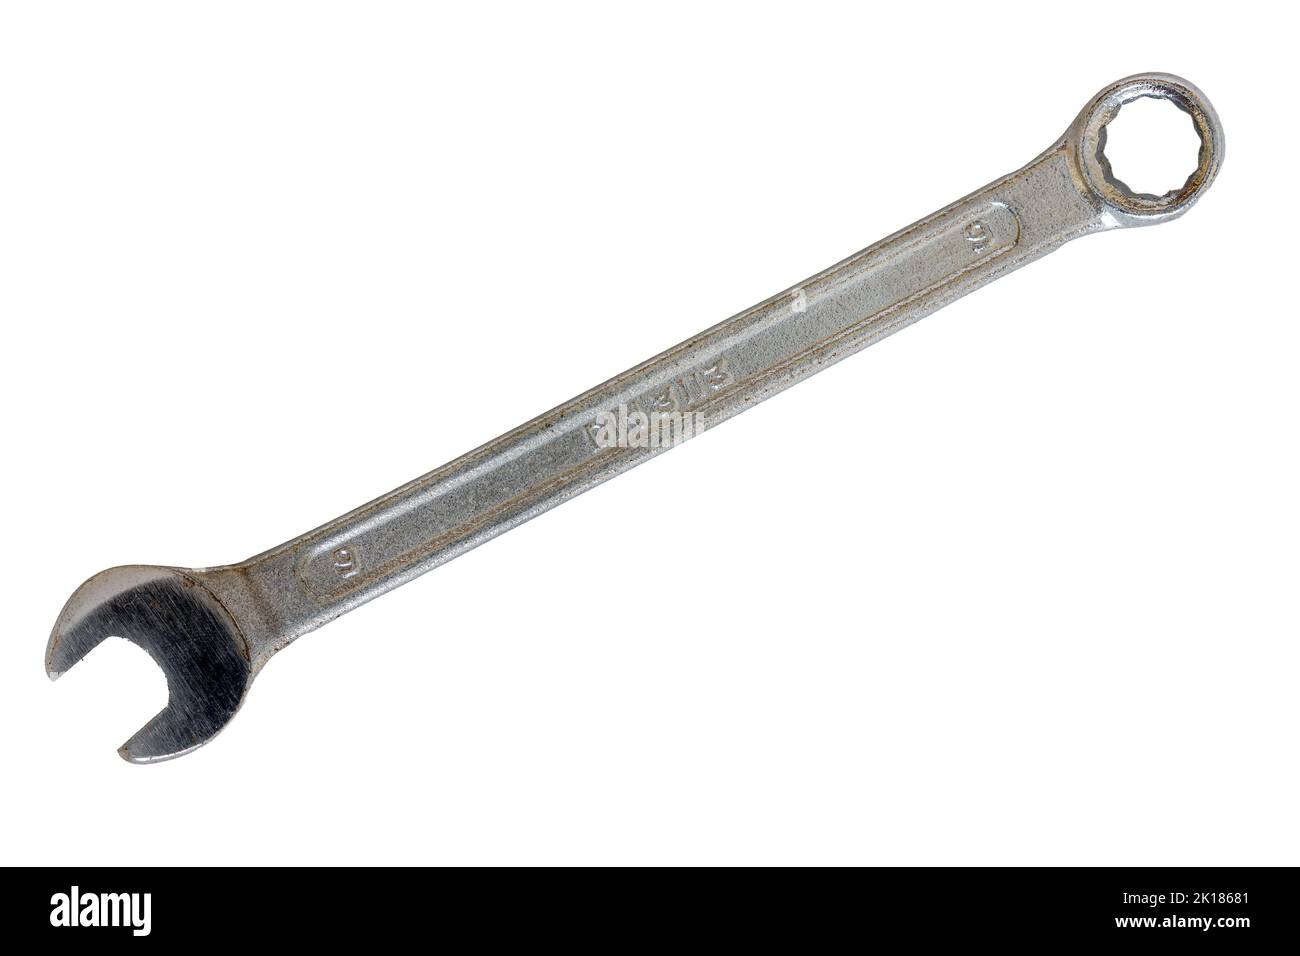 Ein Schraubenschlüssel- oder Schraubenschlüssel-Arbeitswerkzeug Stockfoto